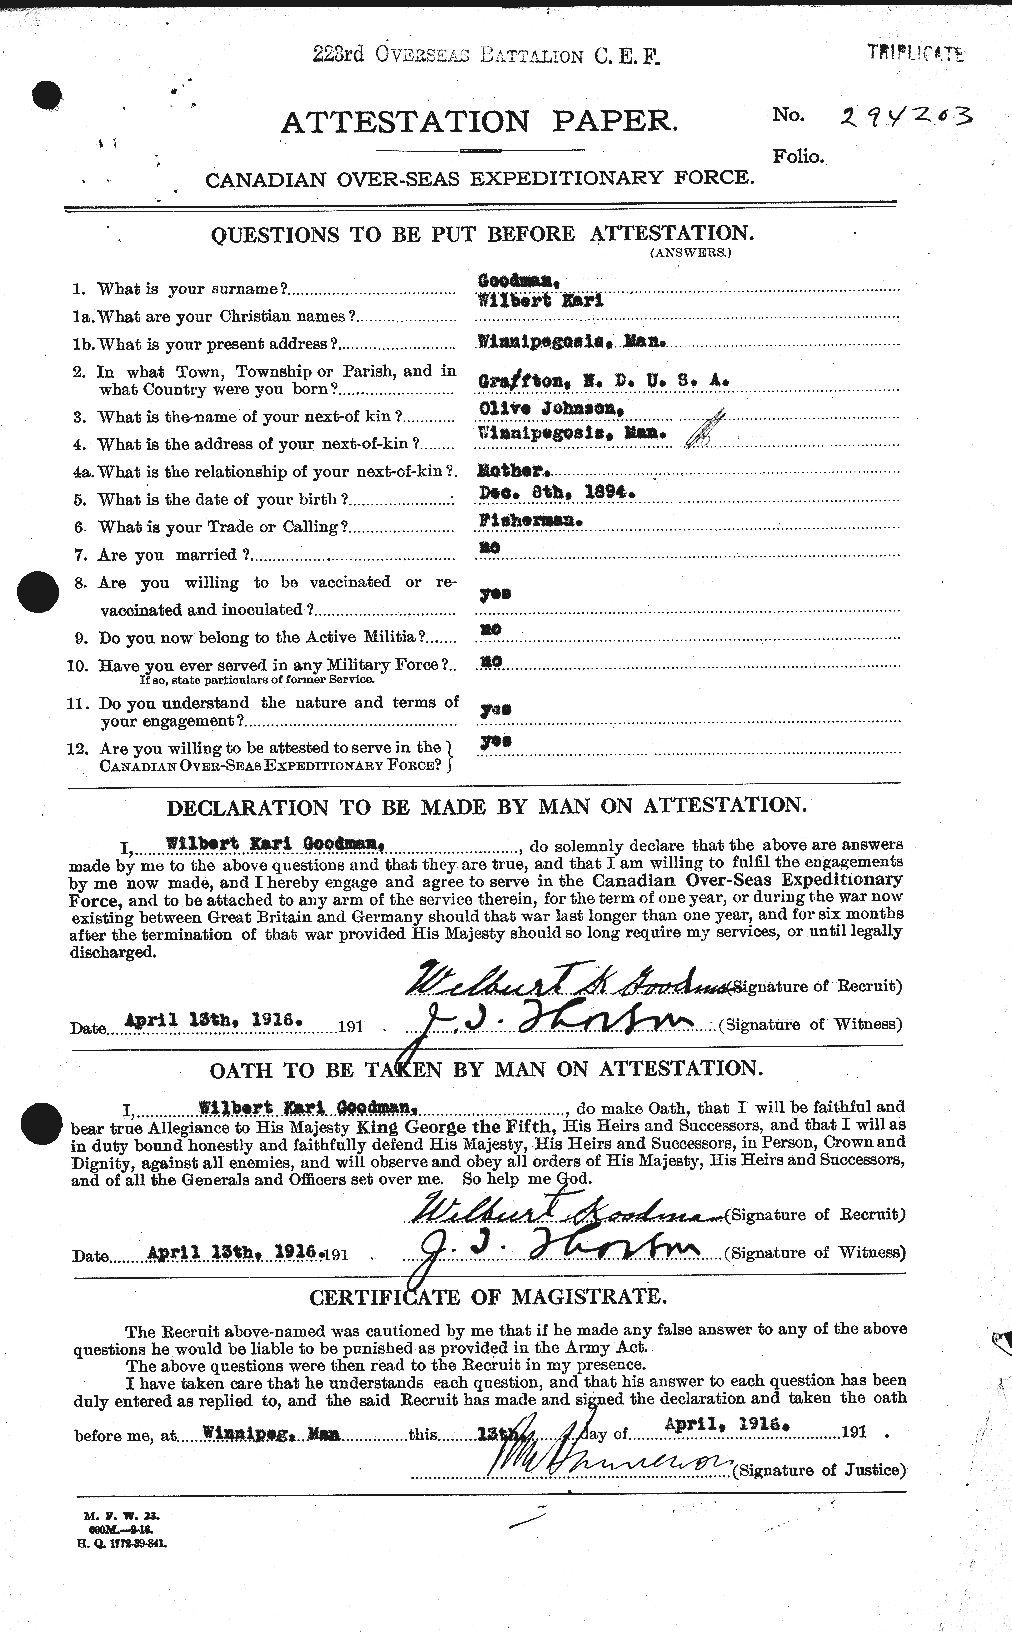 Dossiers du Personnel de la Première Guerre mondiale - CEC 356226a